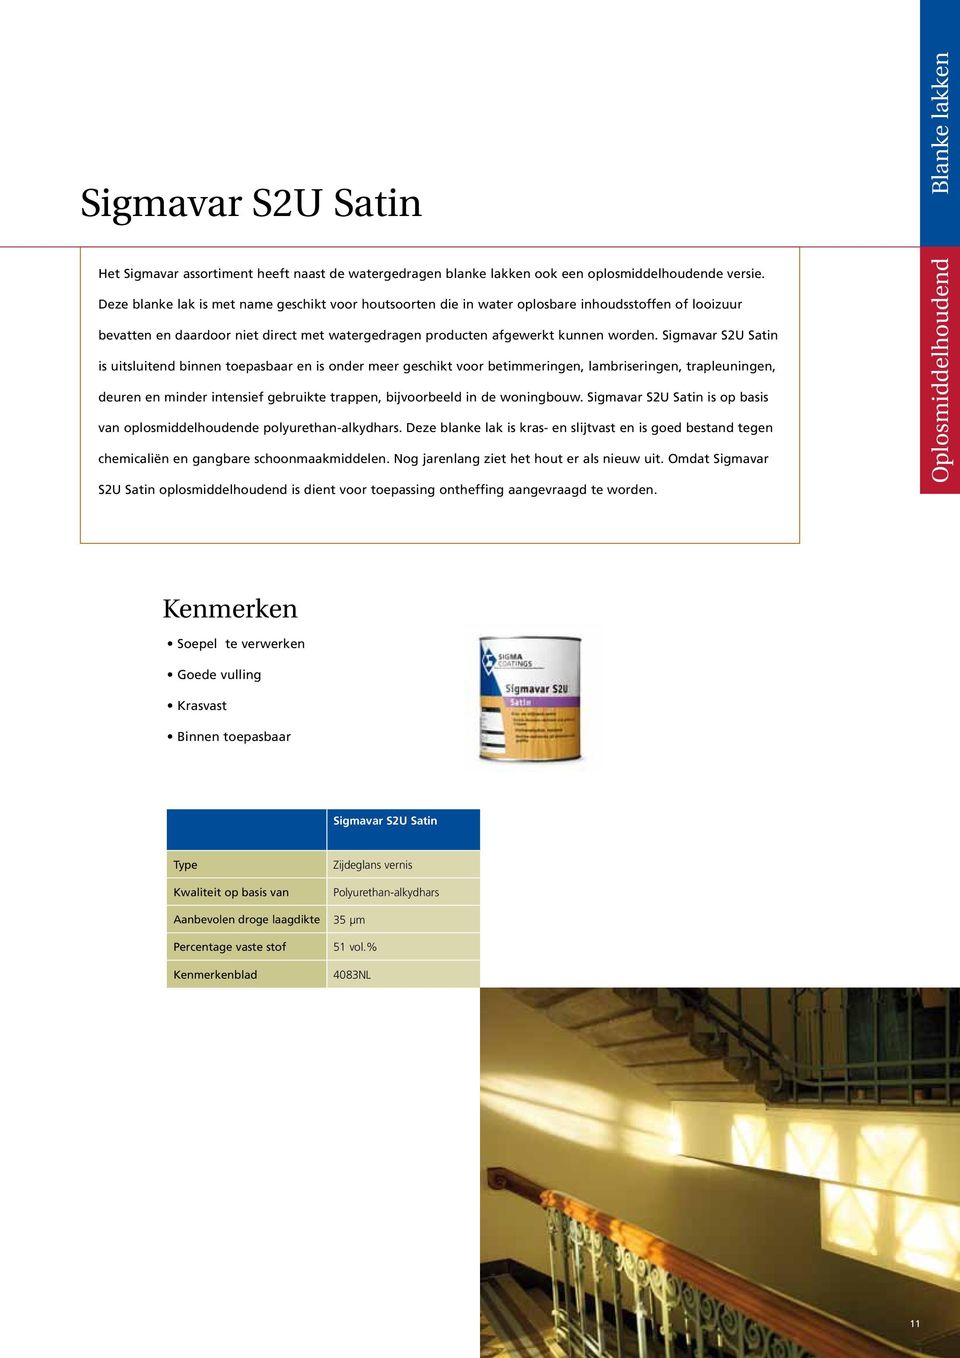 Sigmavar S2U Satin is uitsluitend binnen toepasbaar en is onder meer geschikt voor betimmeringen, lambriseringen, trapleuningen, deuren en minder intensief gebruikte trappen, bijvoorbeeld in de